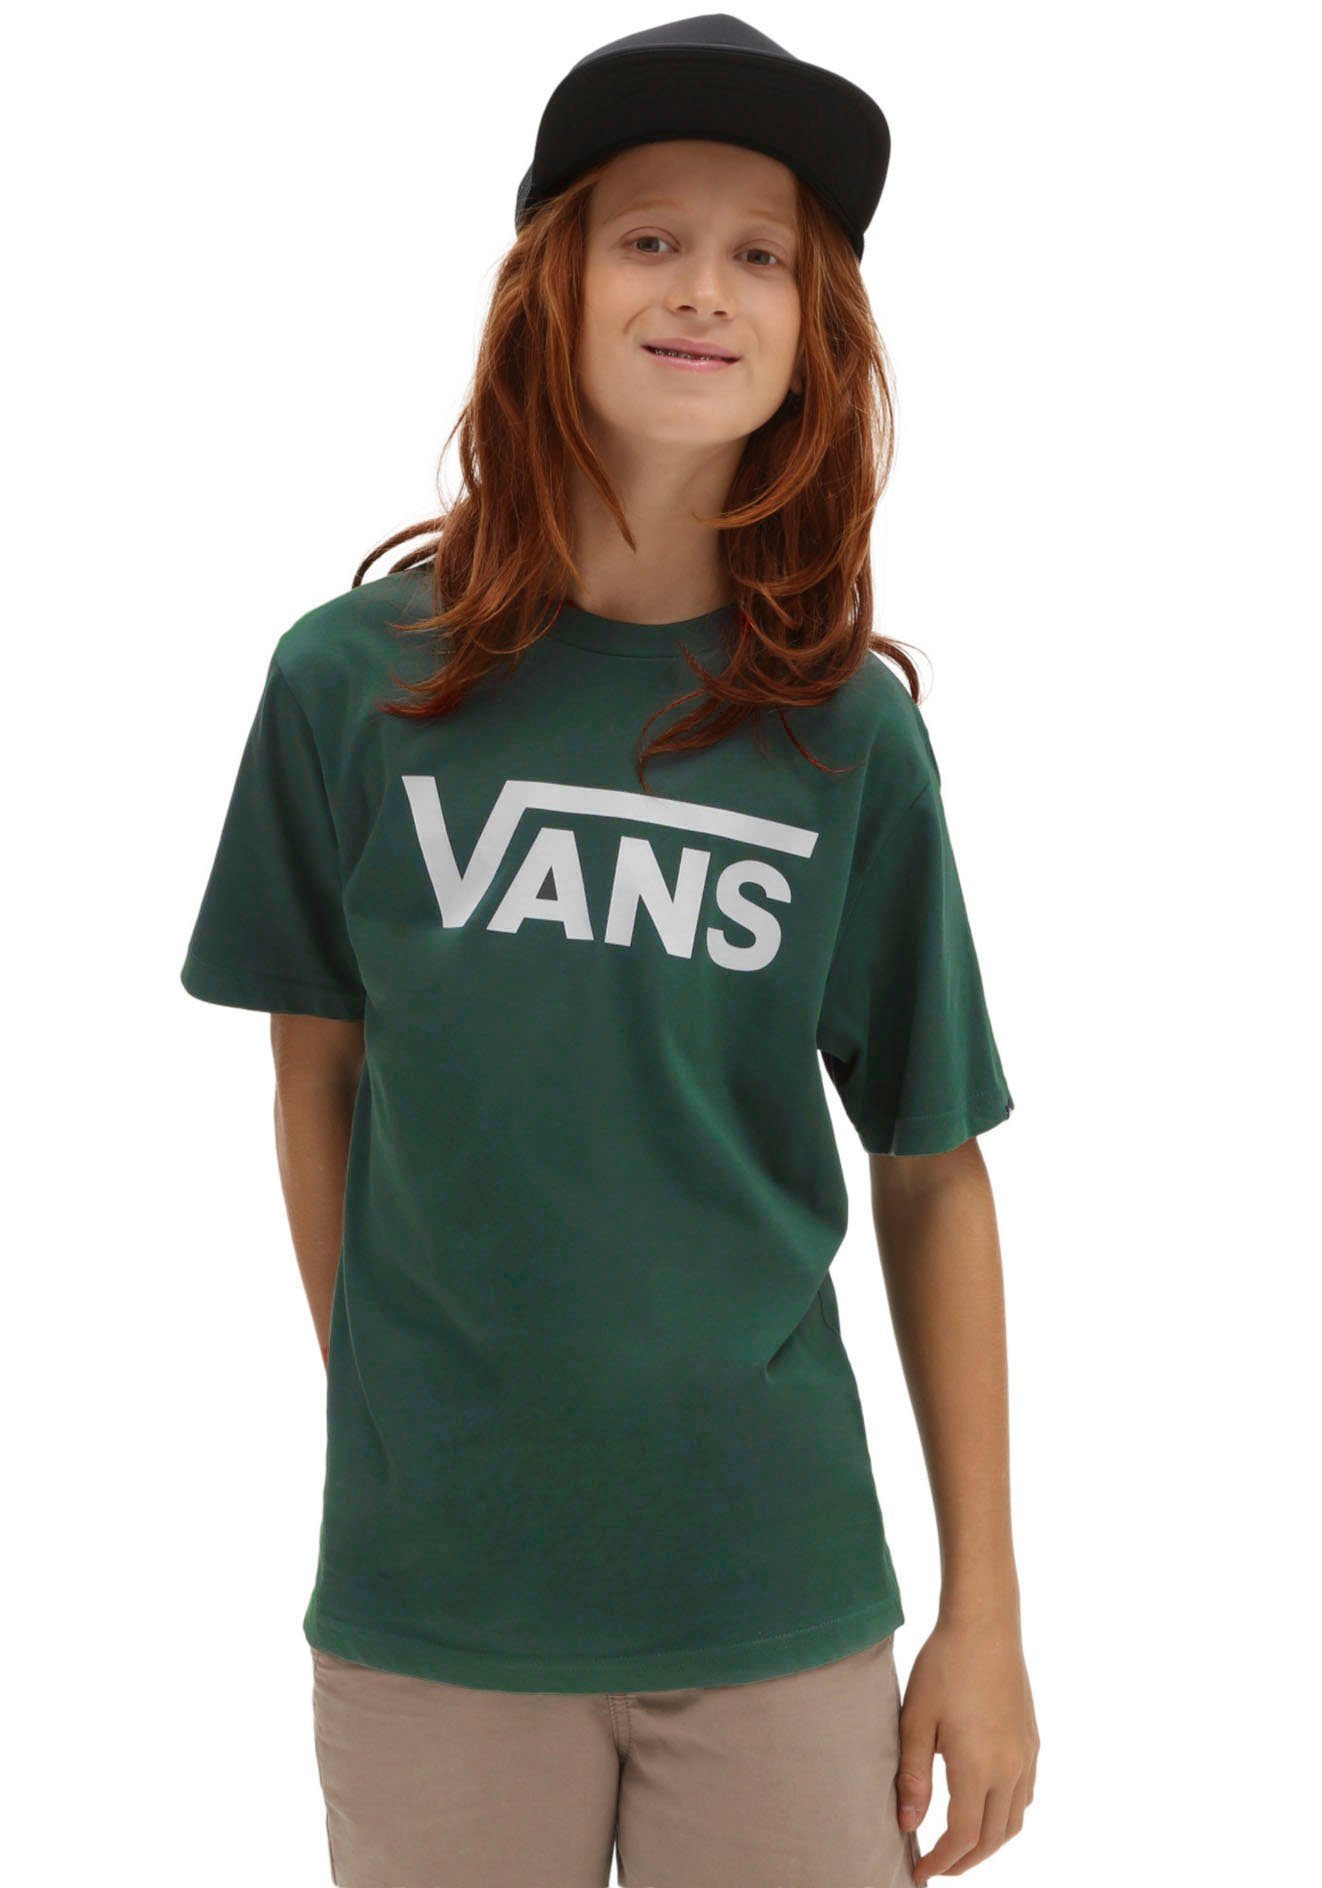 Vans T-Shirt für Kinder